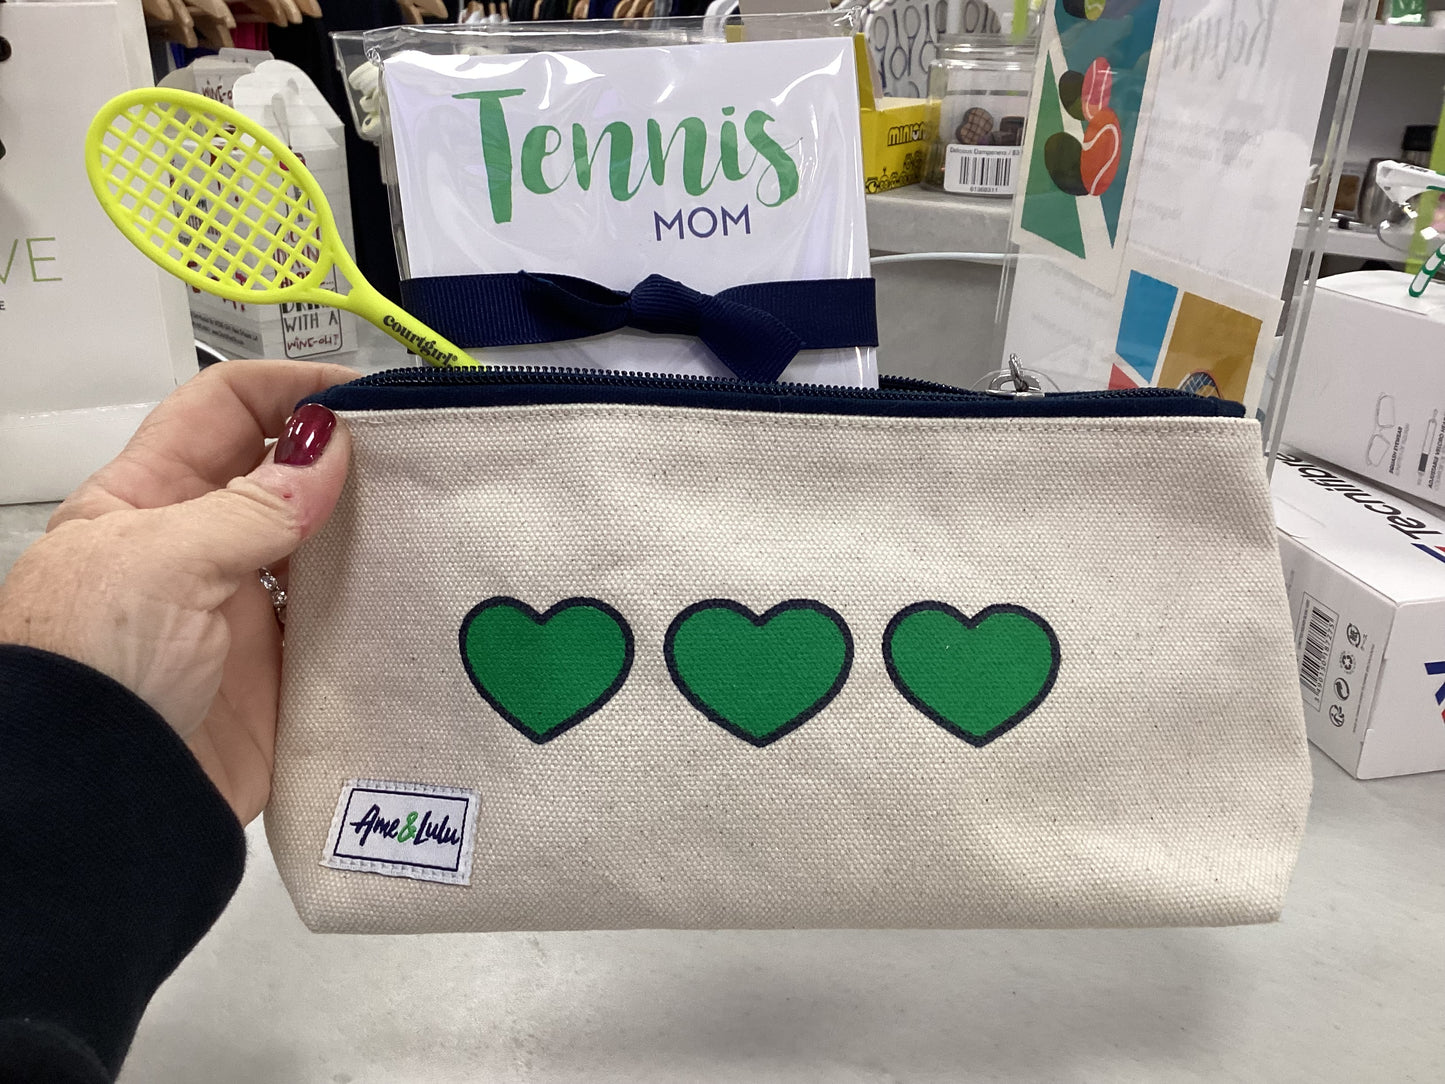 Tennis gift set